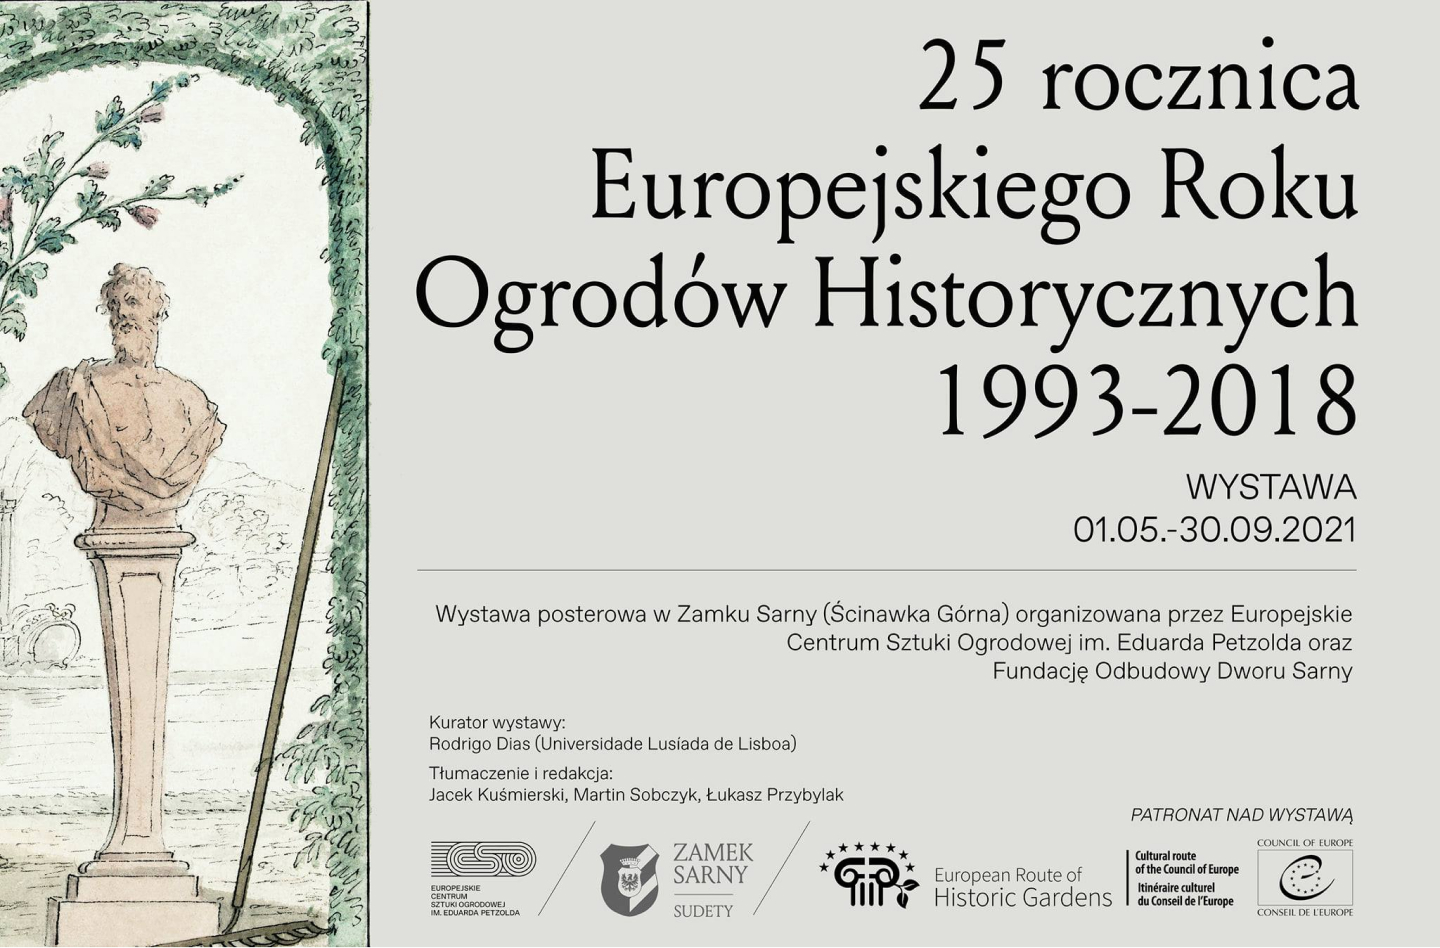 25. rocznica Europejskiego Roku Ogrodów Historycznych, 1993-2018